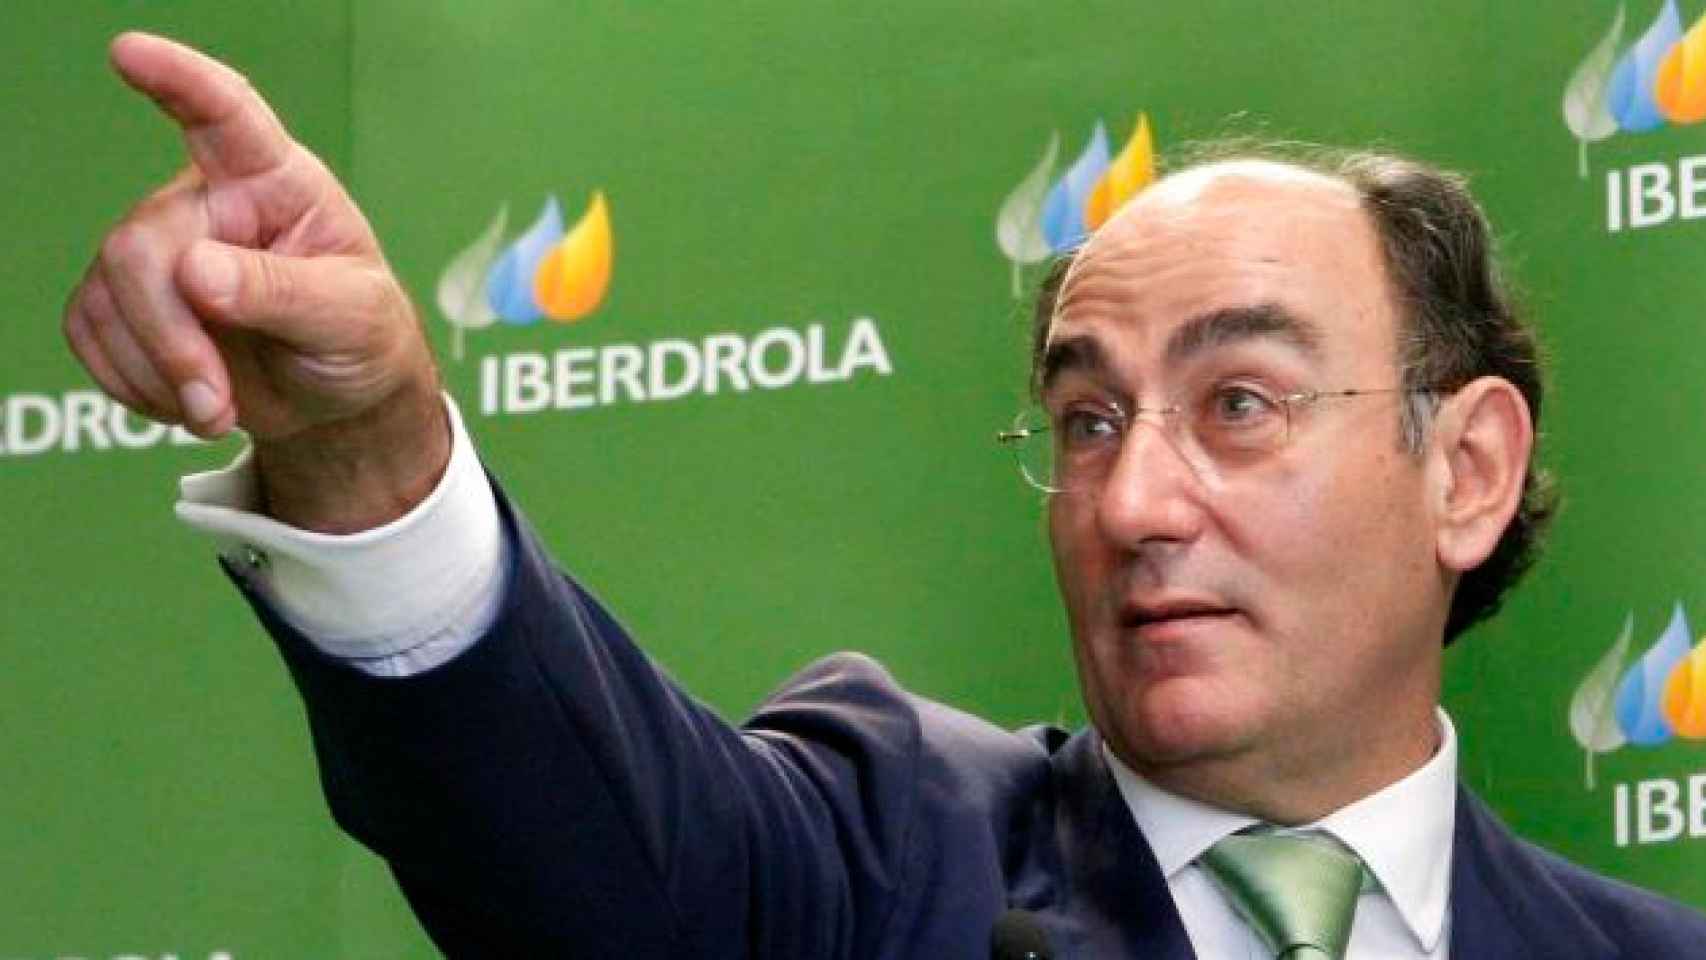 El presidente de Iberdrola, Ignacio Sánchez Galán / EFE